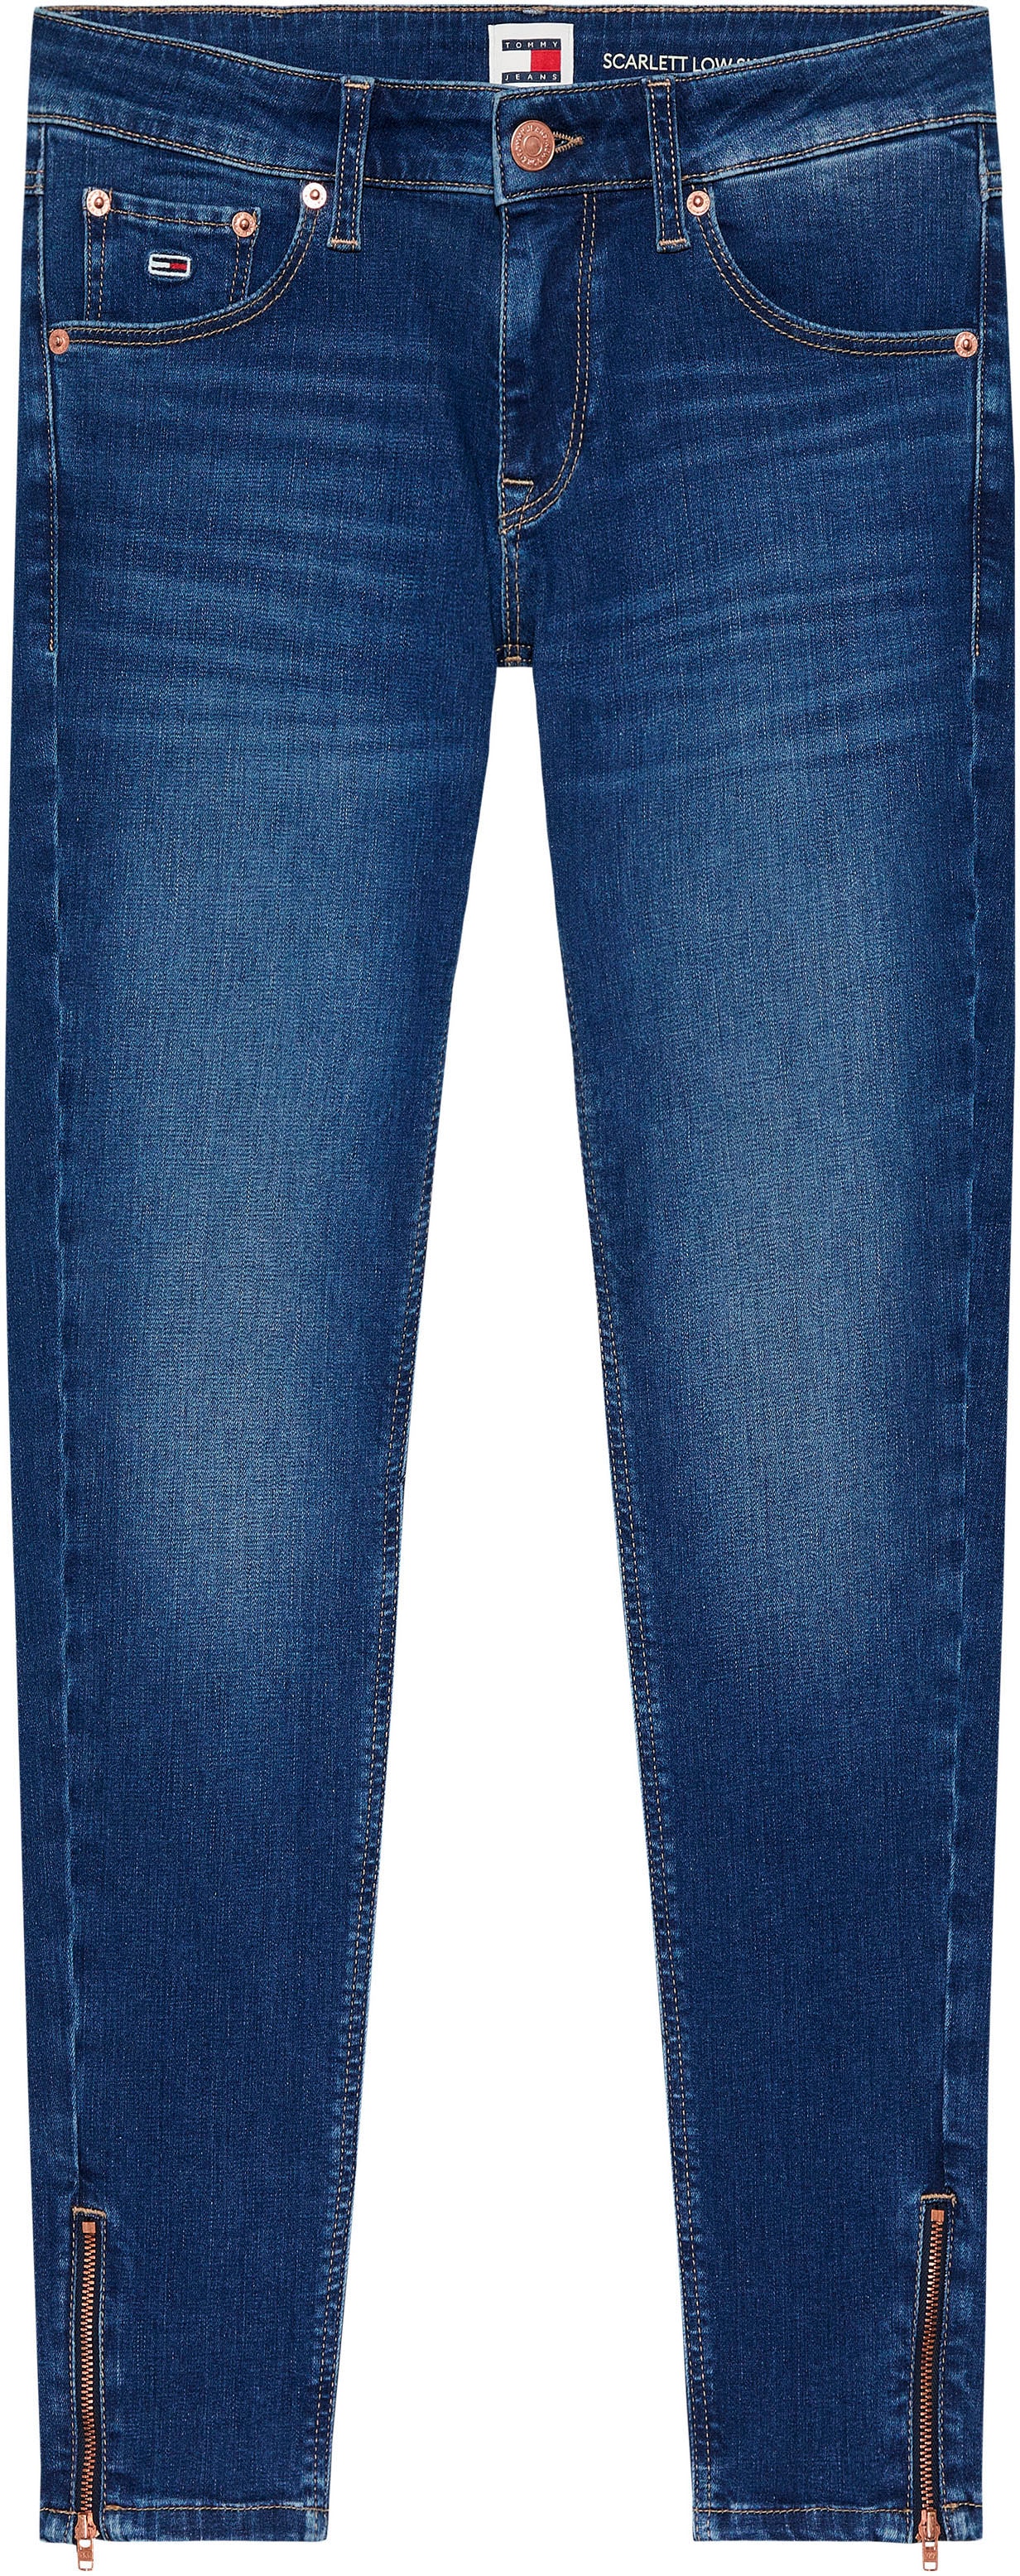 Tommy Jeans Skinny-fit-Jeans »SCARLETT LW SKN ANK ZIP AH1239«, mit  Lederlogopatch online kaufen | I'm walking